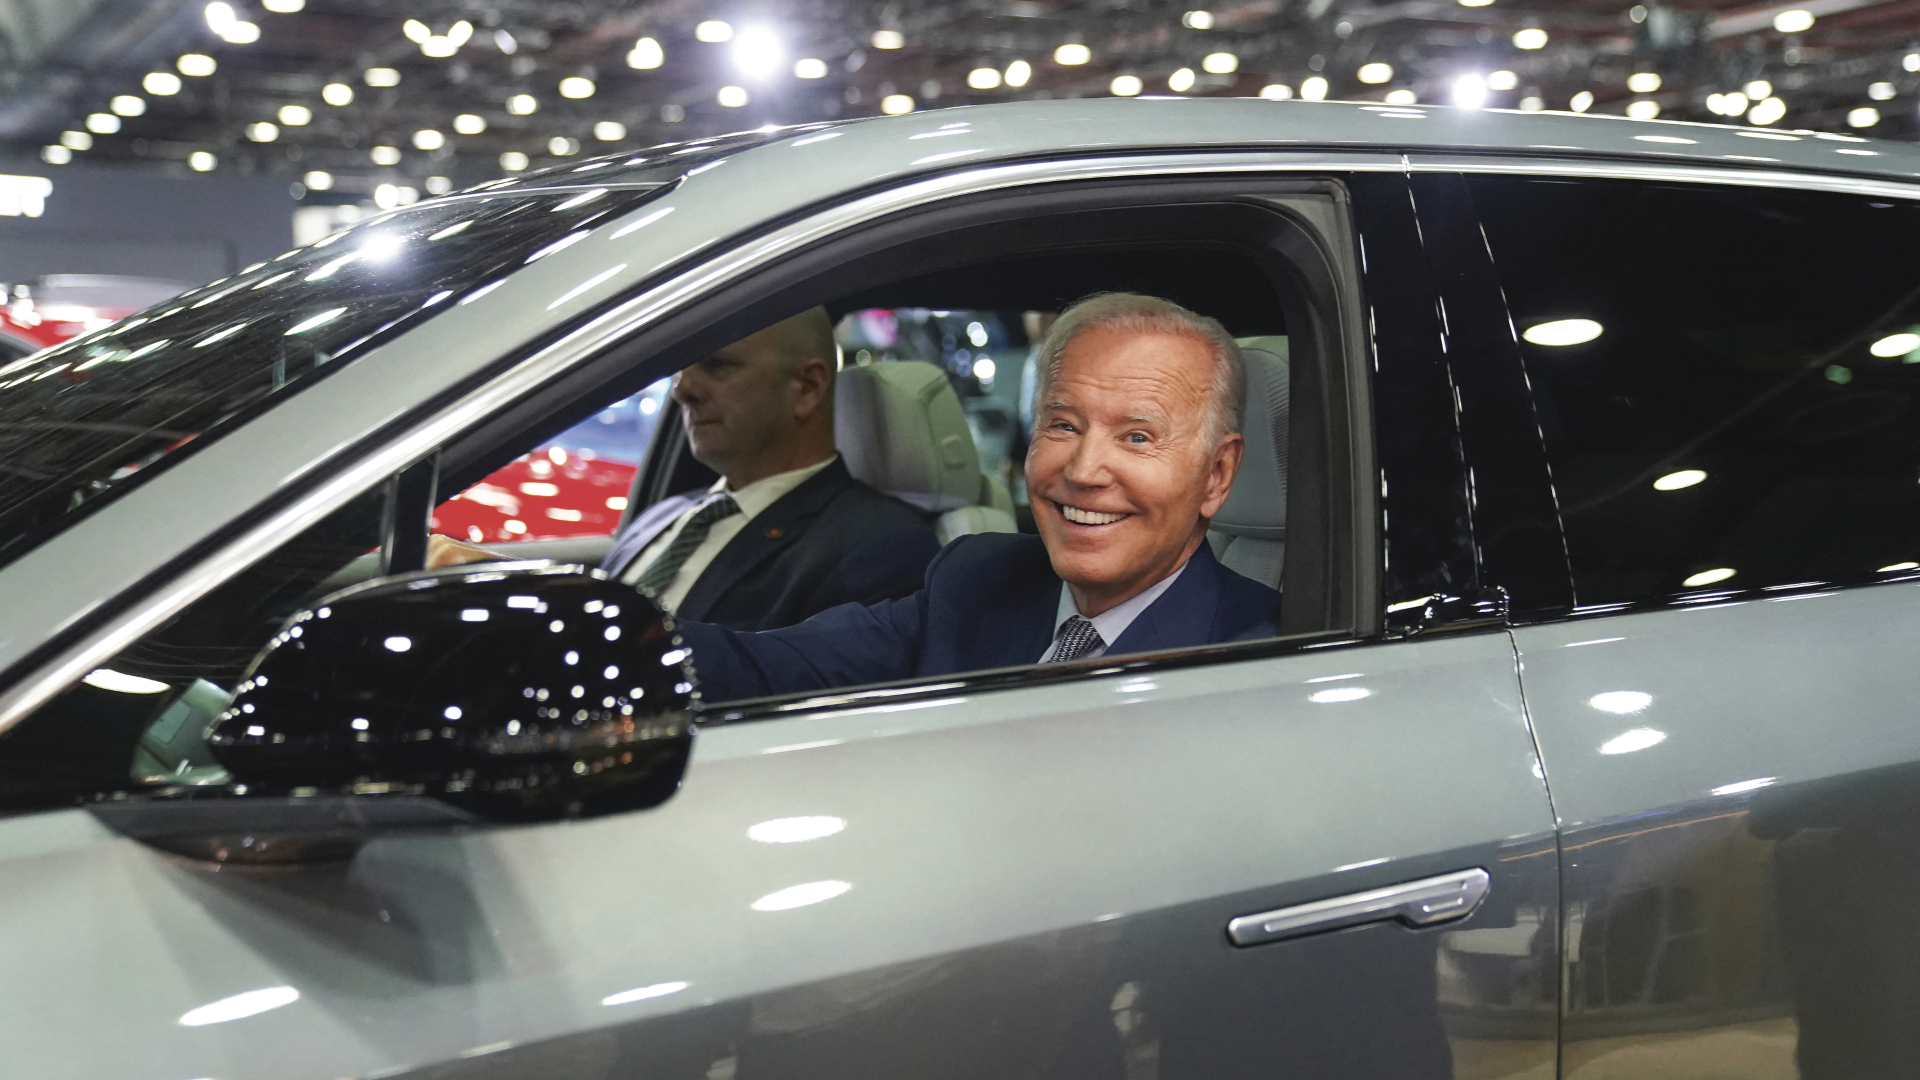 Joe Biden sitter i førersetet i en bil og smiler til kamera